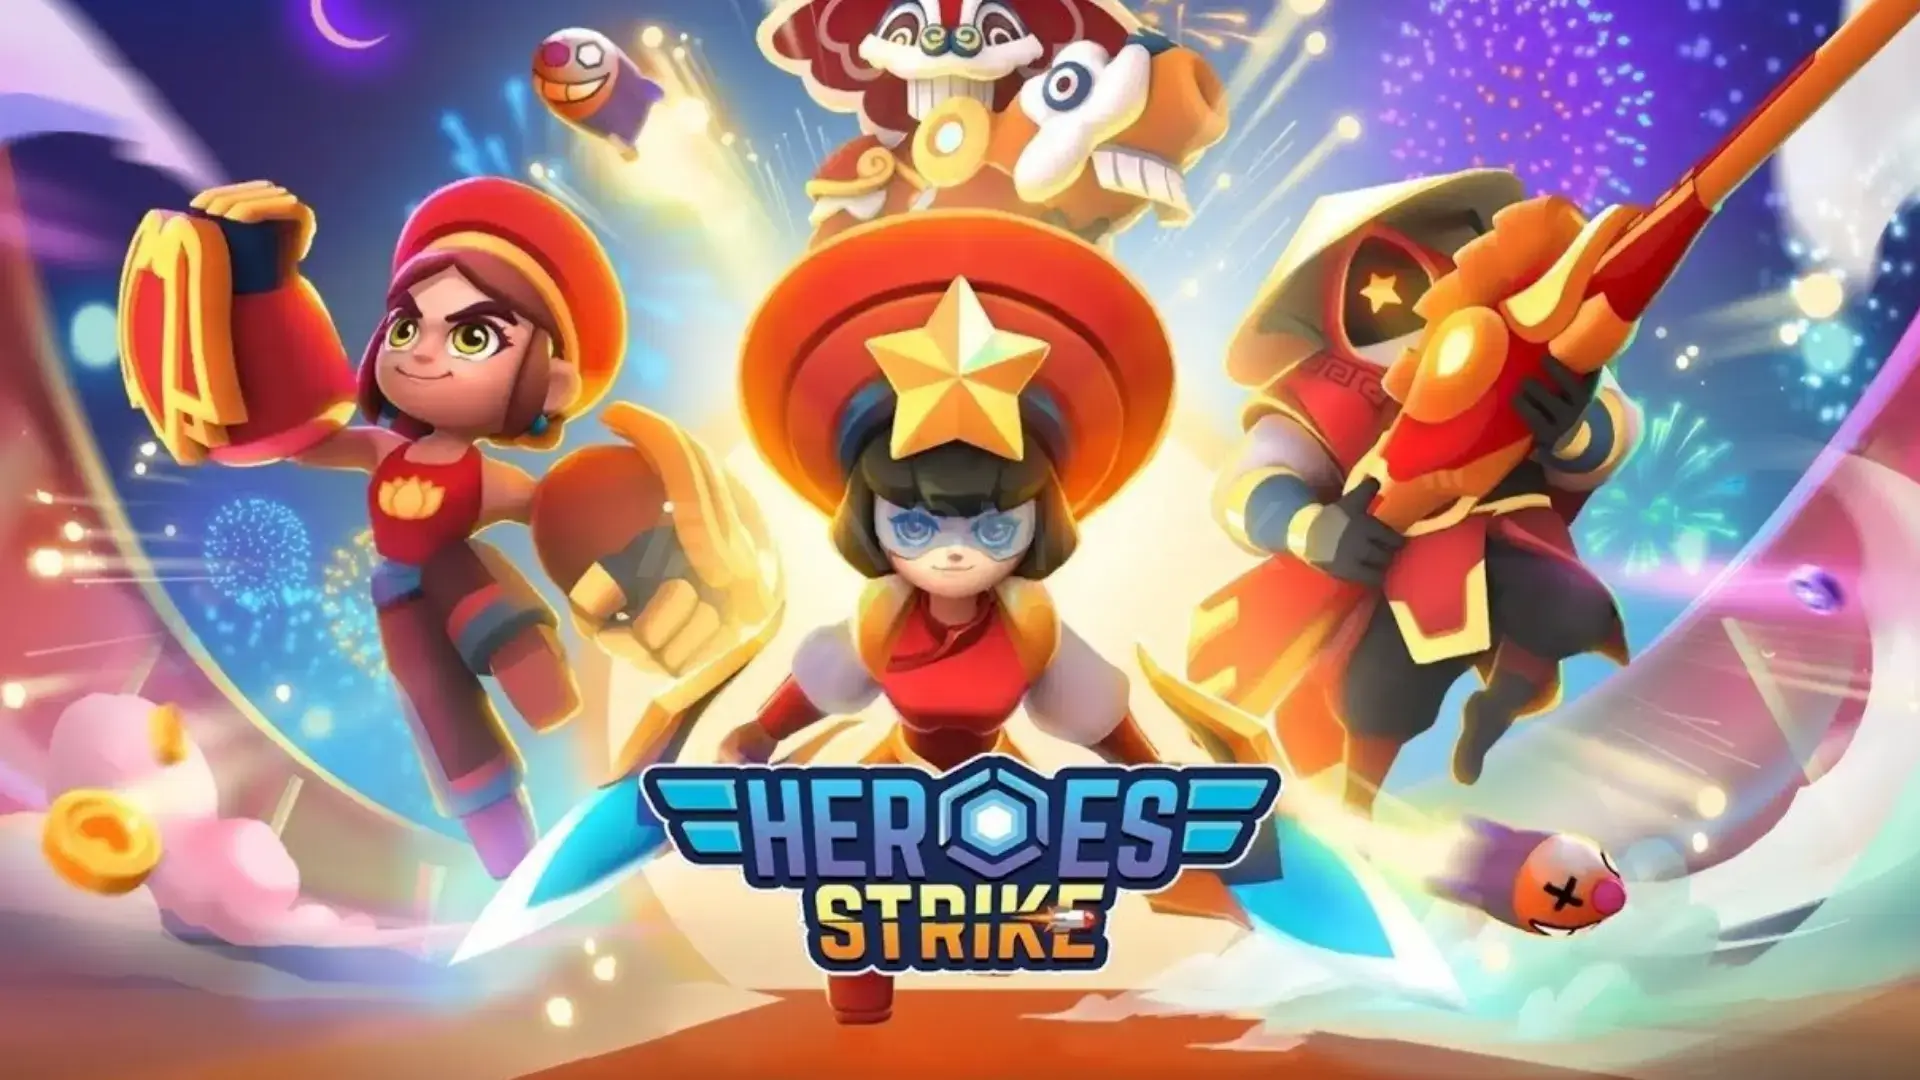 Heroes strike offline feature image